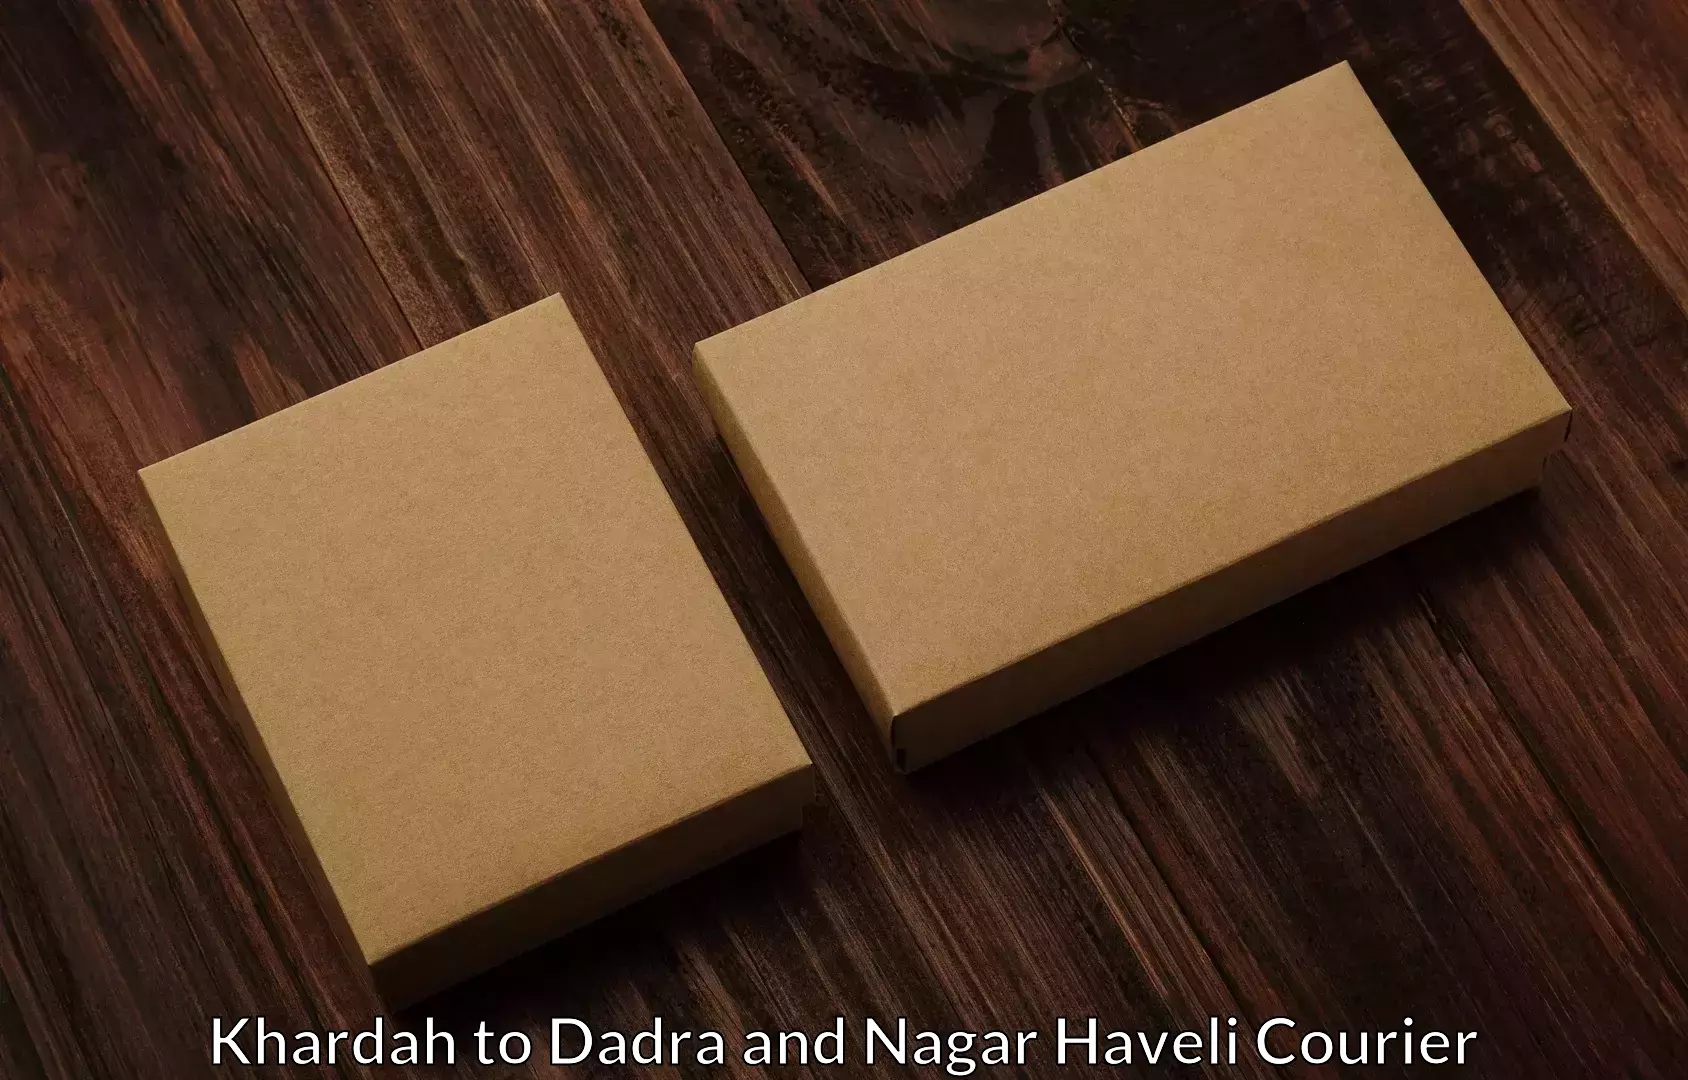 Safe household movers Khardah to Dadra and Nagar Haveli